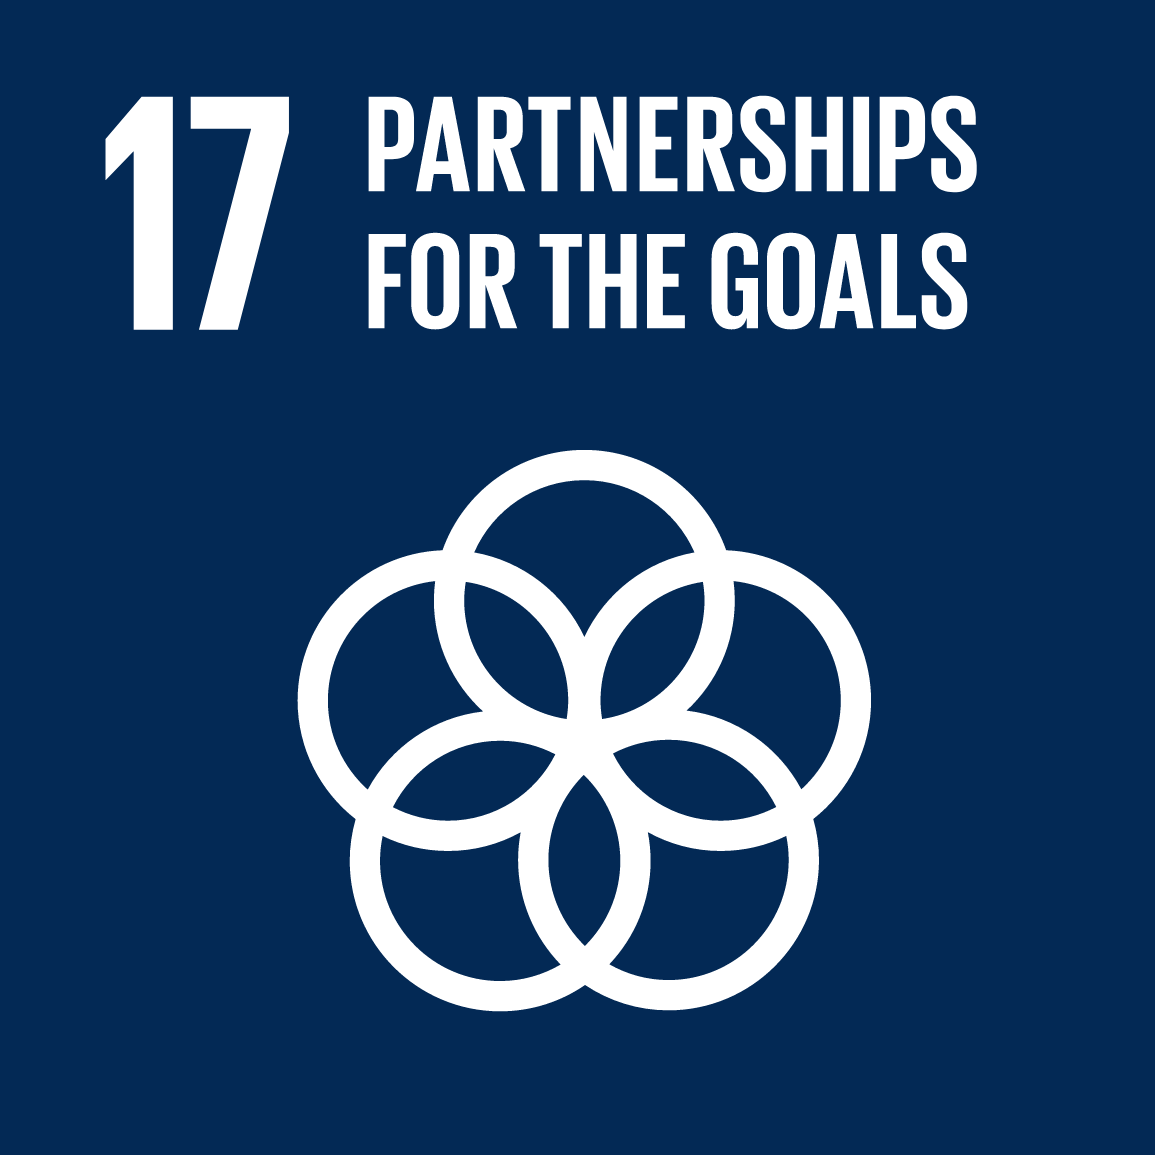 SDG17 Partnership for the Goals